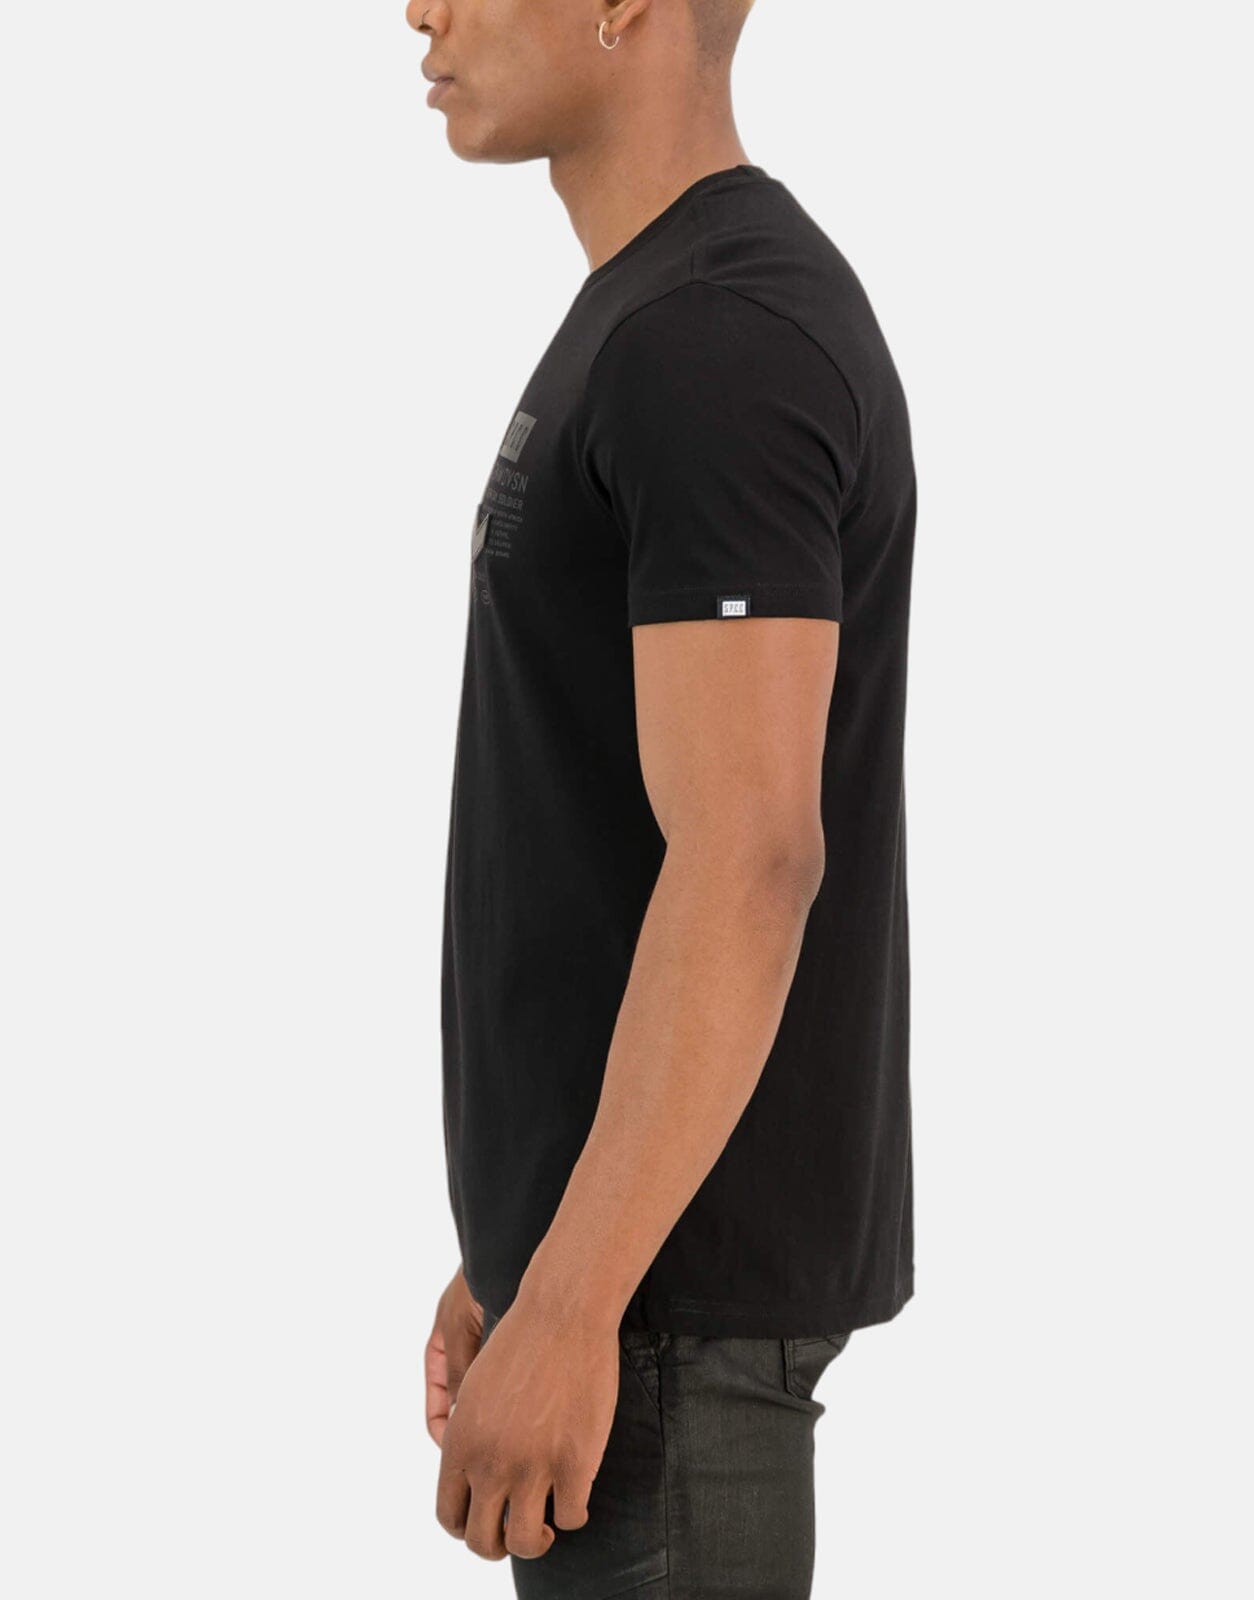 SPCC Vega Black T-Shirt - Subwear